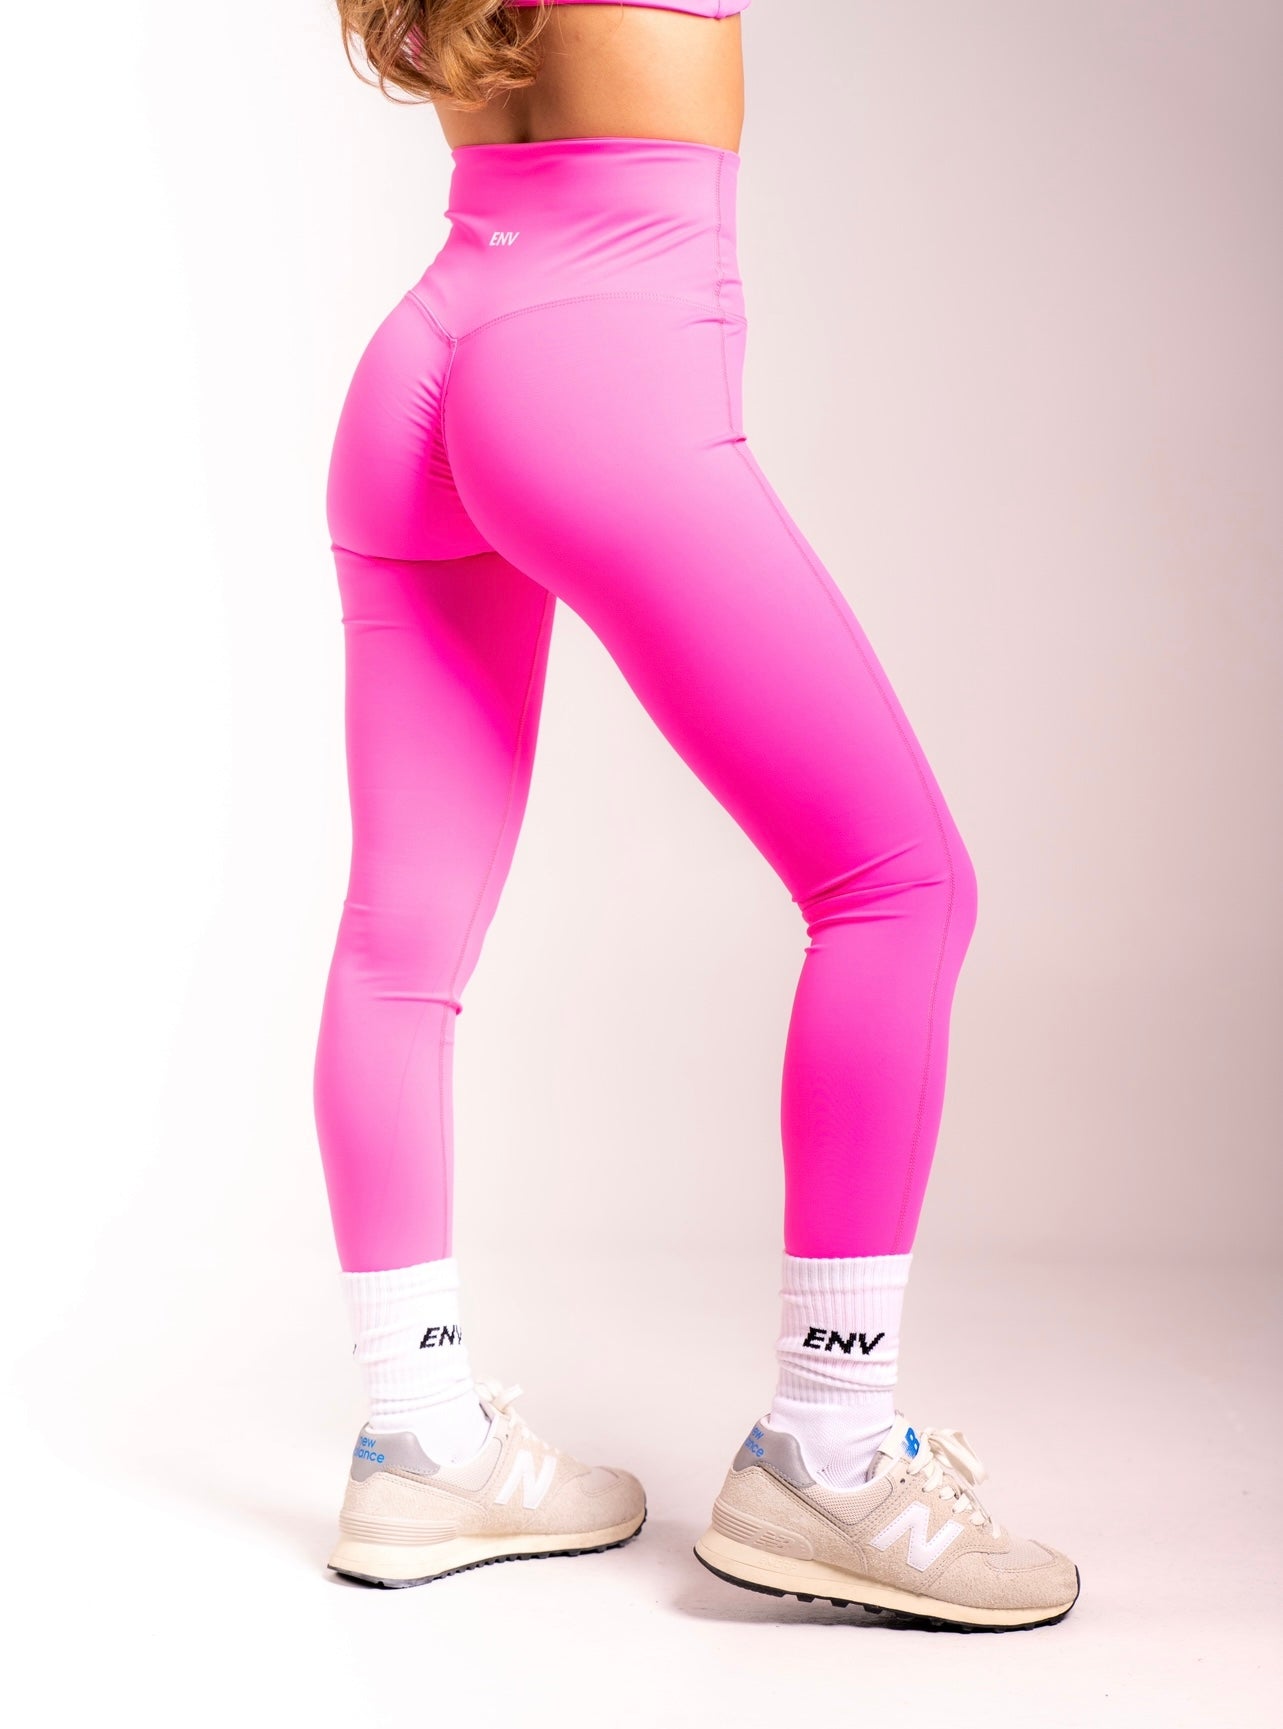 Shocking Pink Sport Leggings